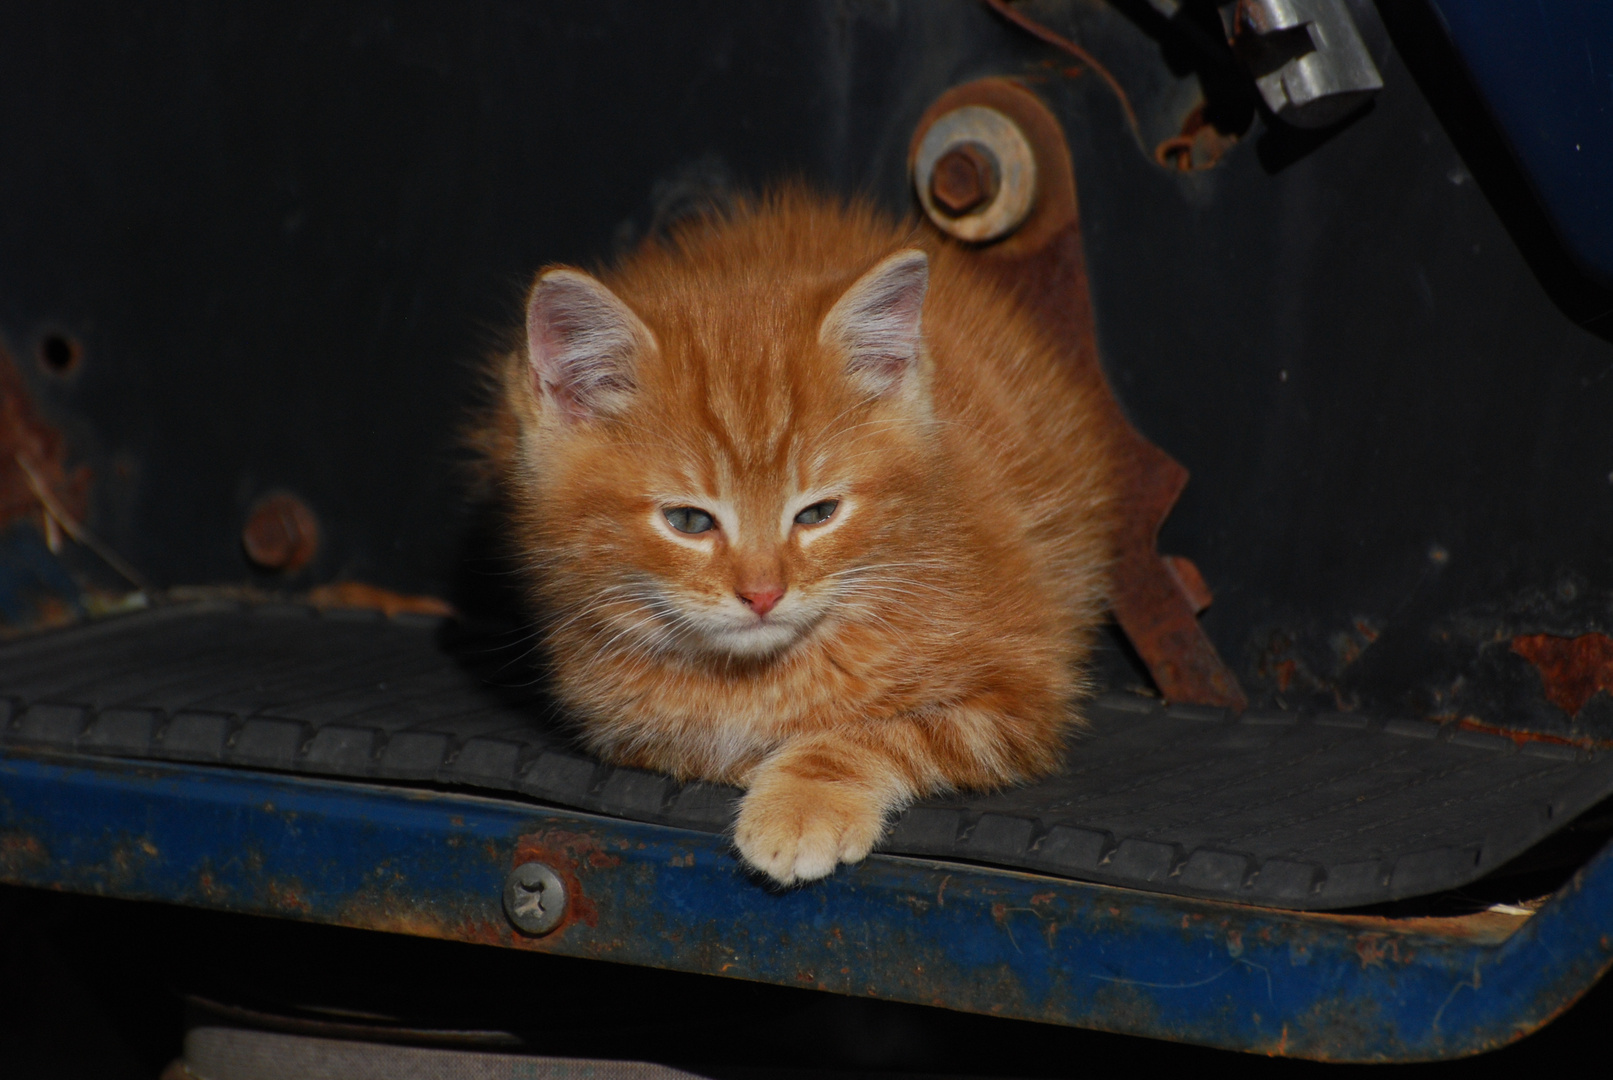 Rusty's kitten